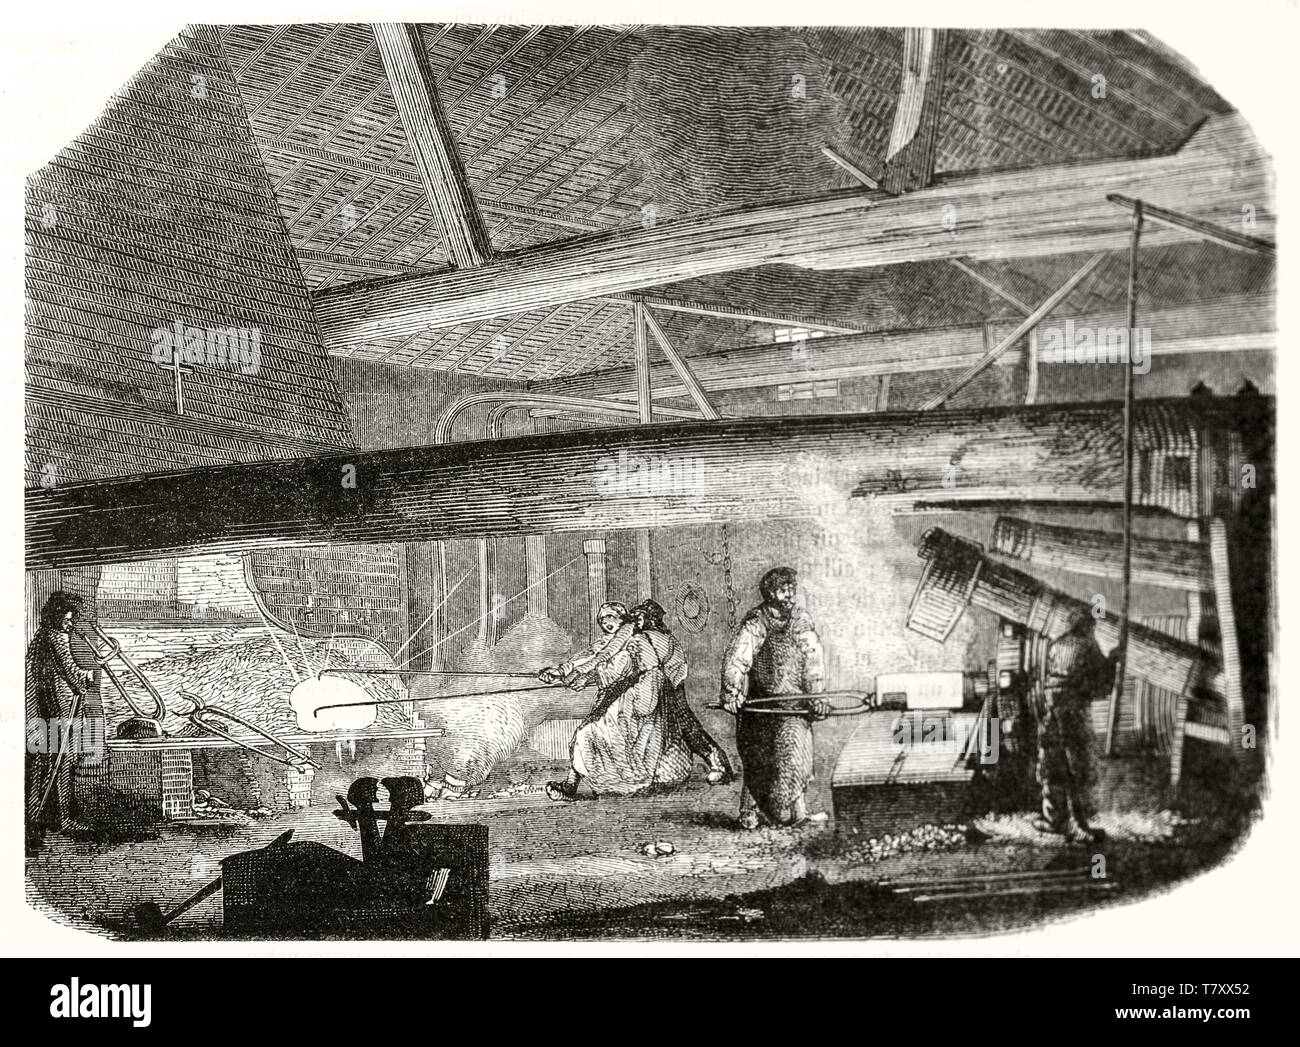 Antico dei lavoratori che utilizzano macchine in una fonderia di caldo. Scala di grigi stile di attacco illustrazione di autore non identificato publ. su Magasin pittoresco Parigi 1848 Foto Stock